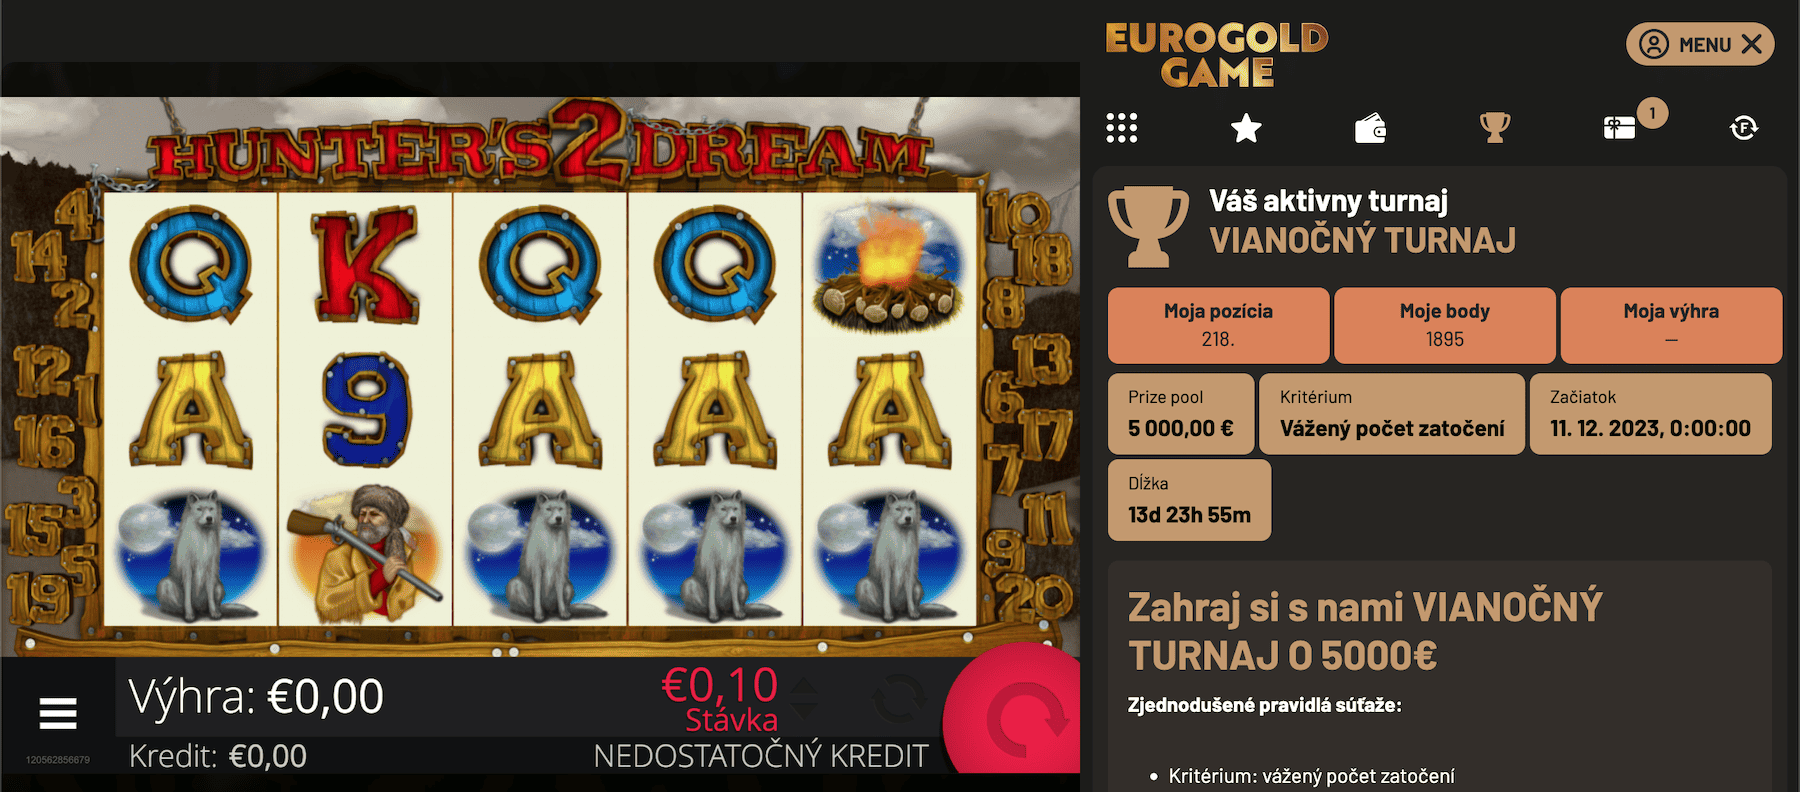 Vianočný turnaj o 5000 € v Eurogold casino - in-game menu detail